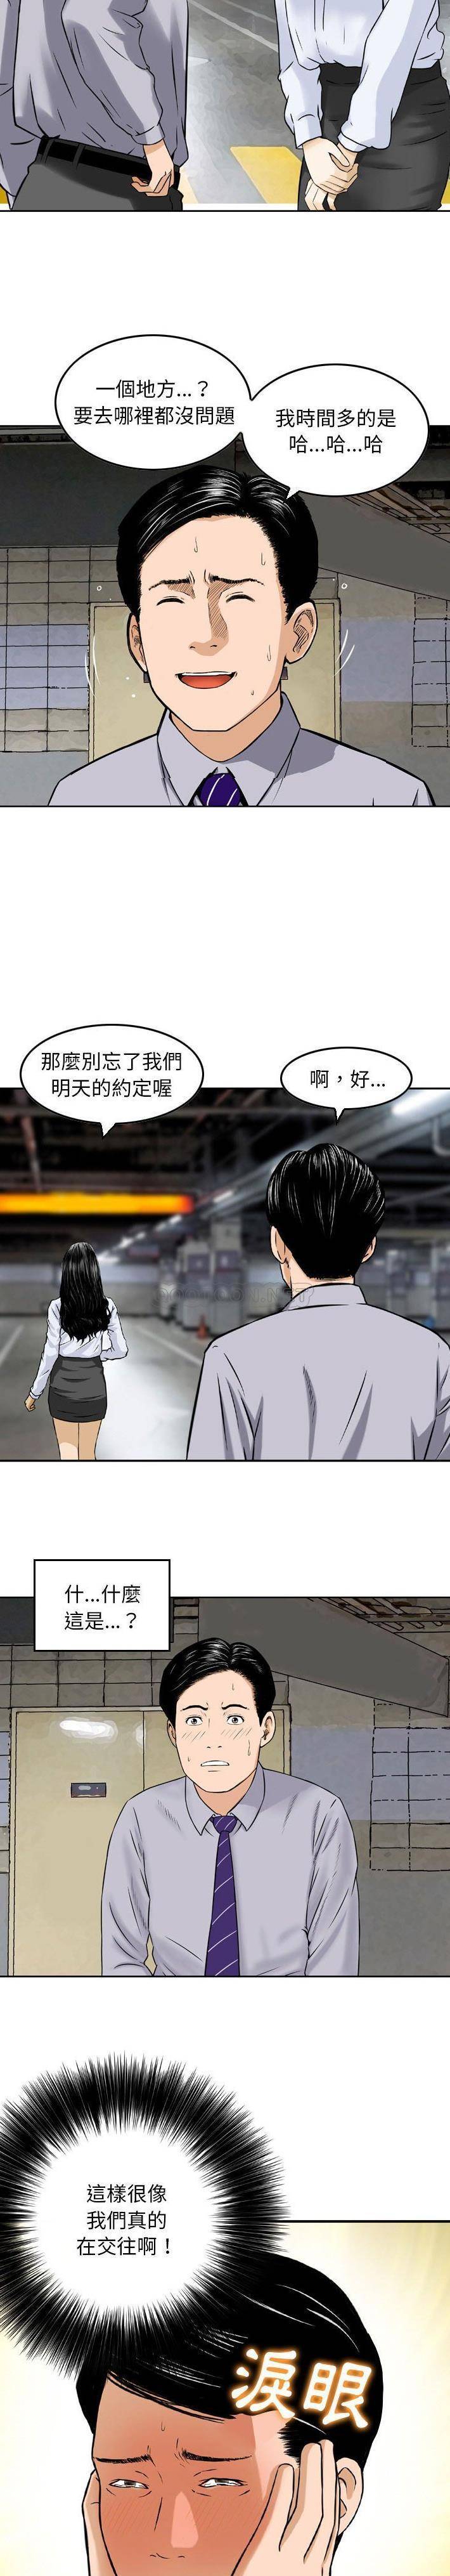 韩国污漫画 金錢的魅力 第4话 7